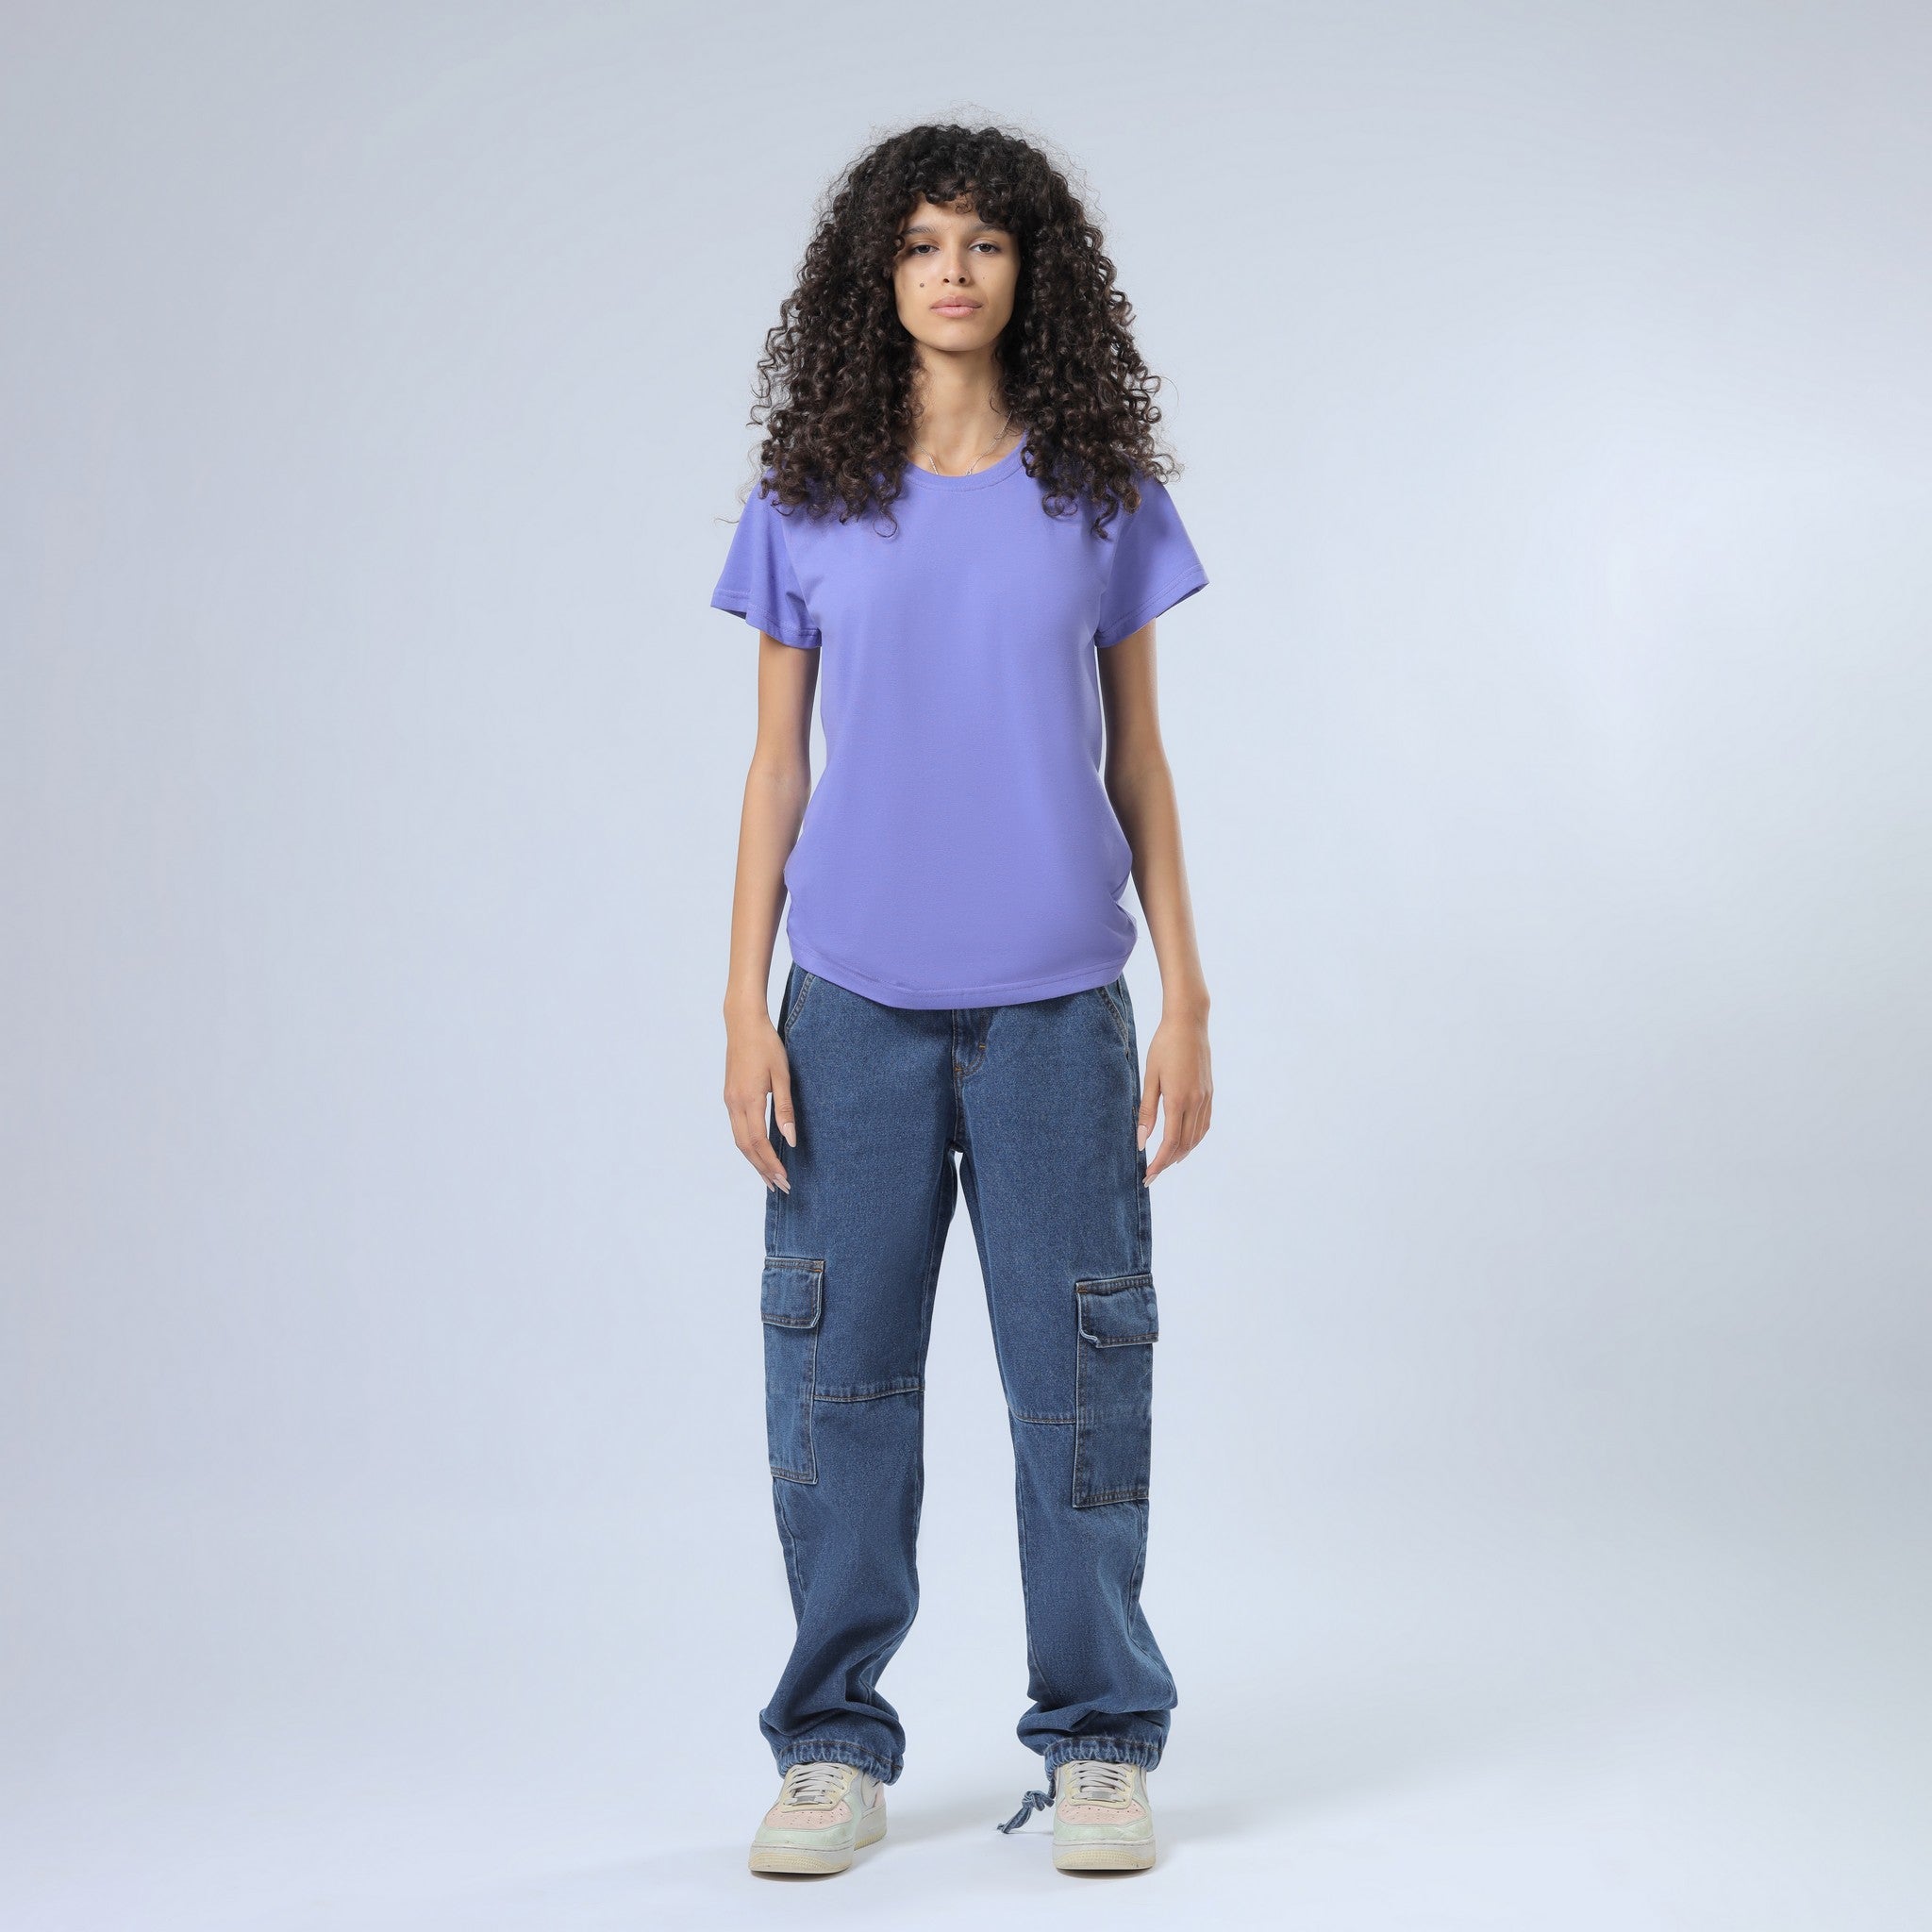 Basic Purple T-Shirt